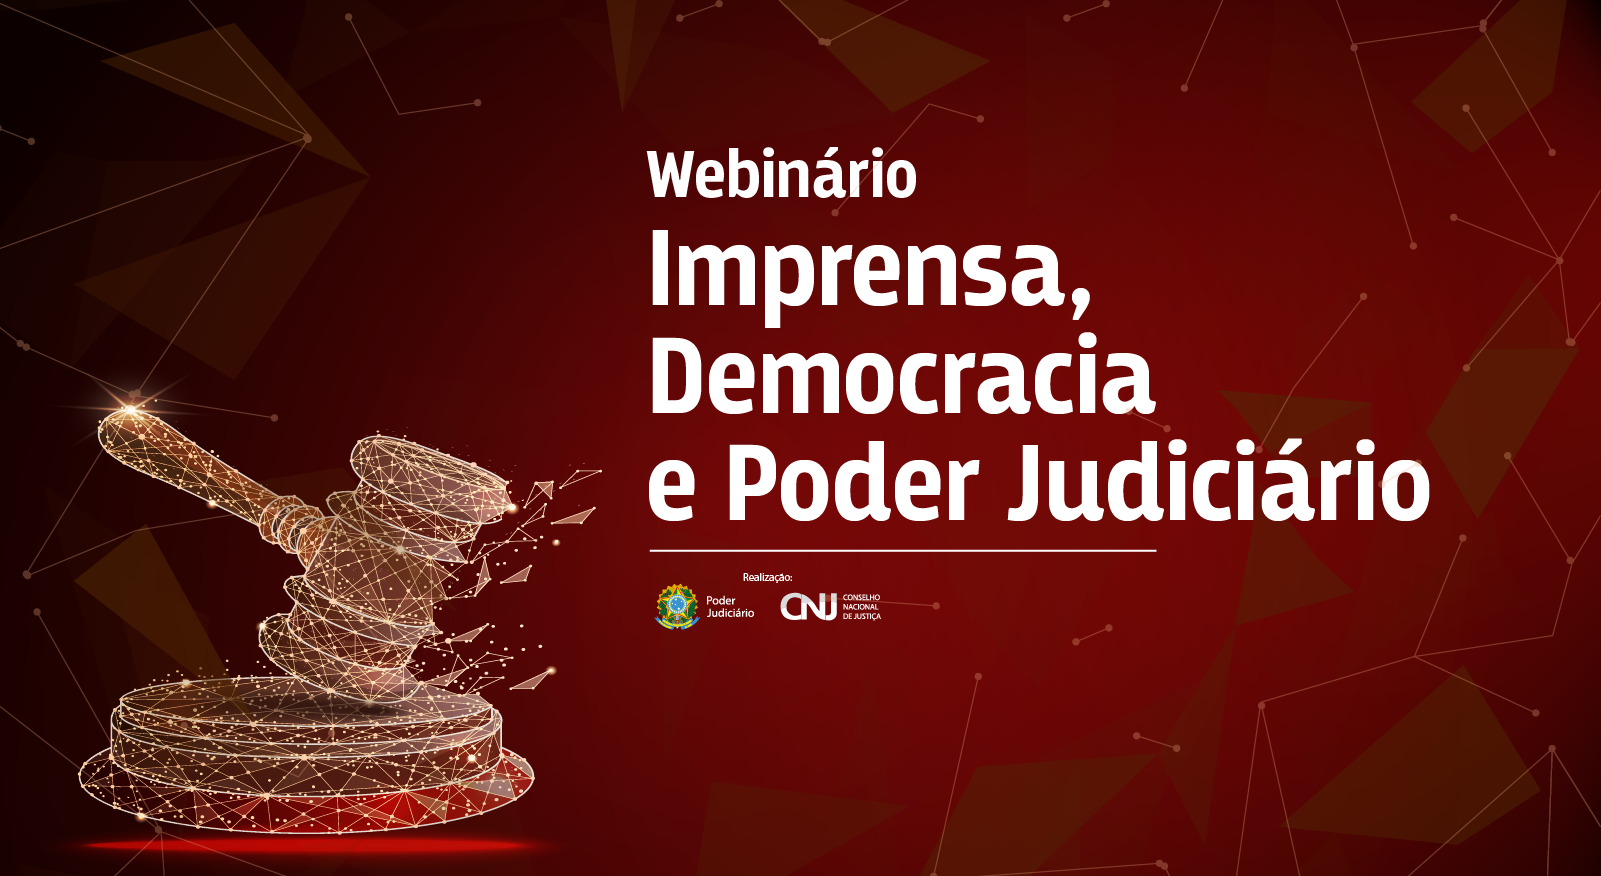 Banner divulgando Webnário: Imprensa, Democracia e Poder Judiciário. A imagem um martelo de júri